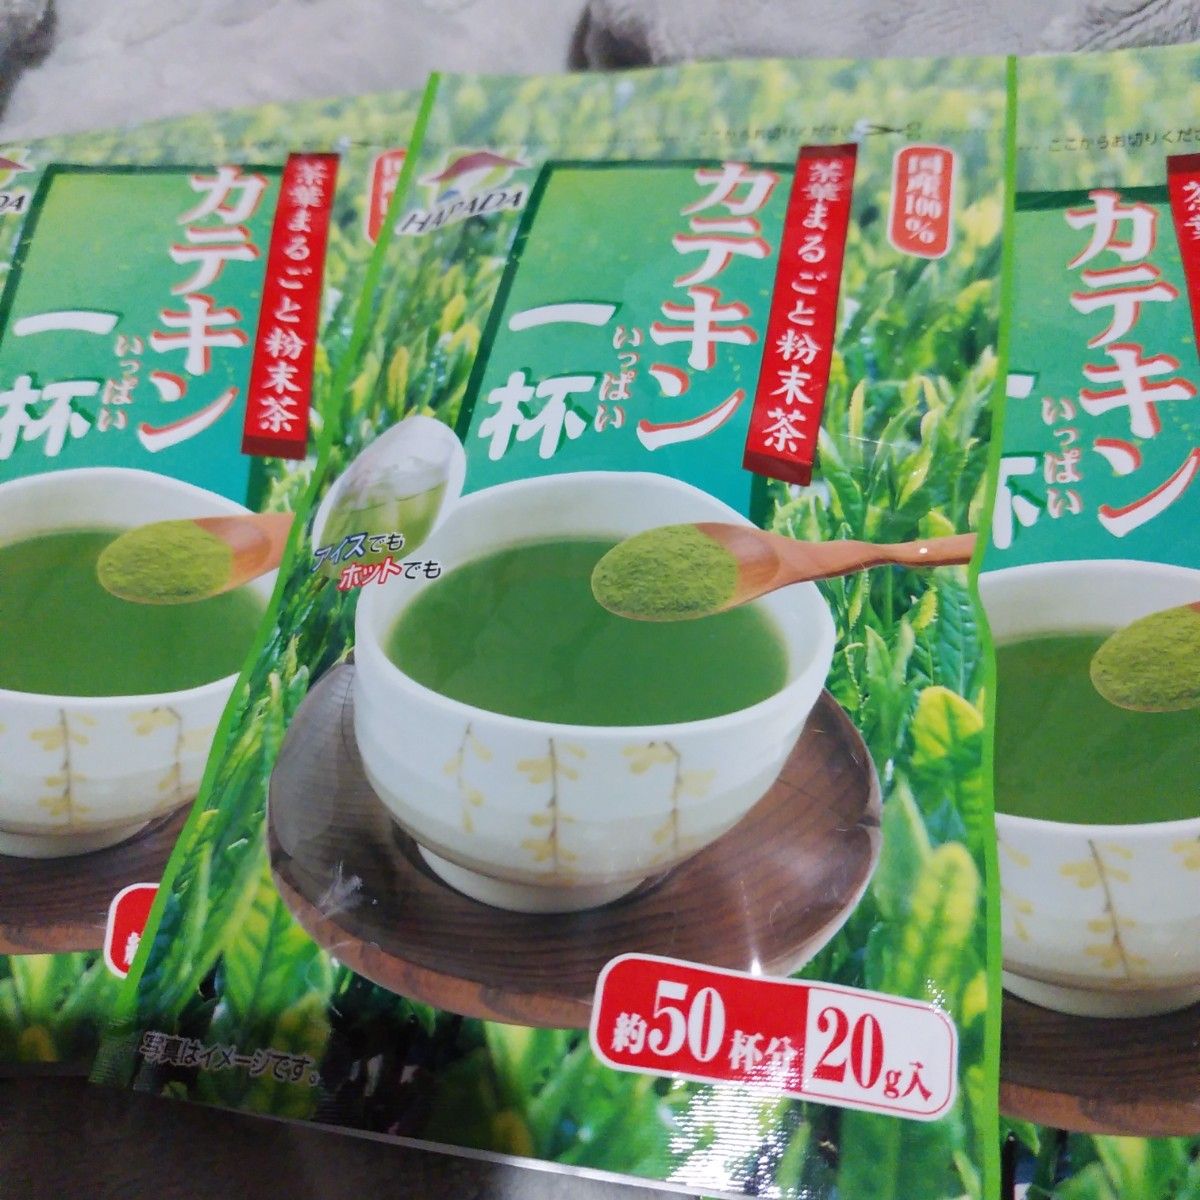 カテキン一杯 茶葉まるごと粉末茶 約50杯×3袋 国産100% 静岡◎もうじき出品取下げます。◎本日中、値下げしておきますね。